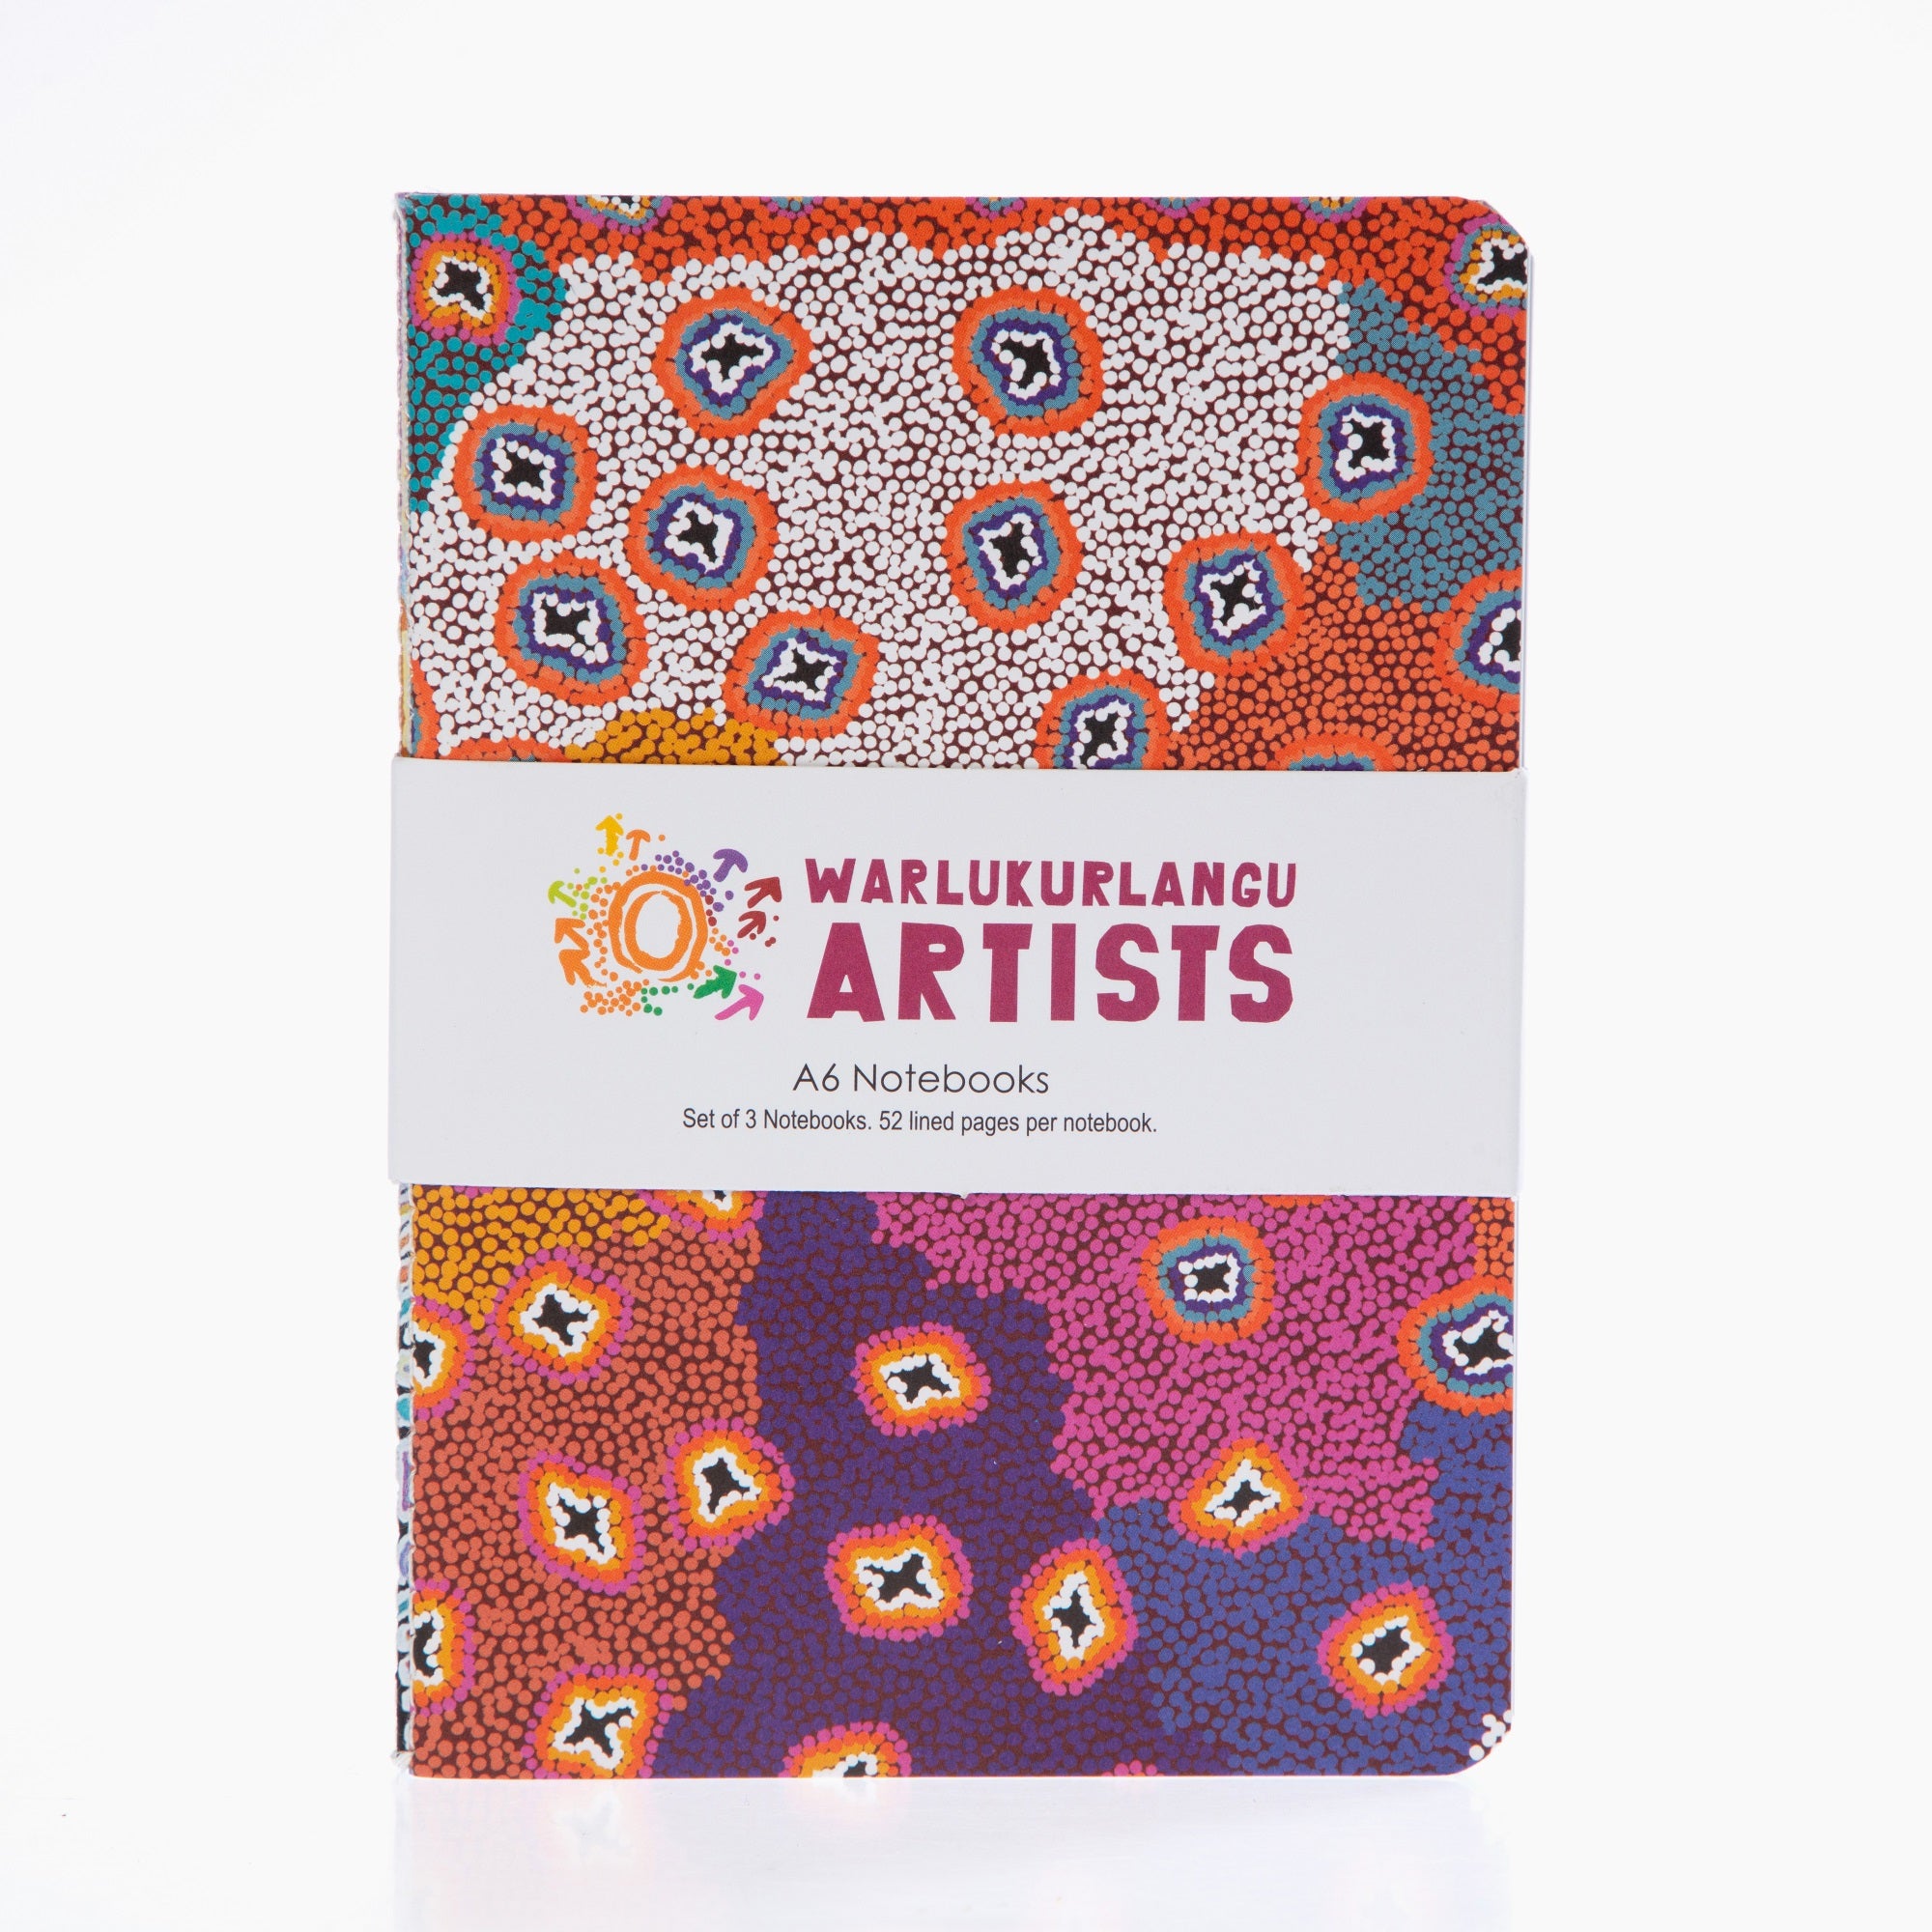 Warlukurlangu Artists A6 Notebooks (Set of 3)